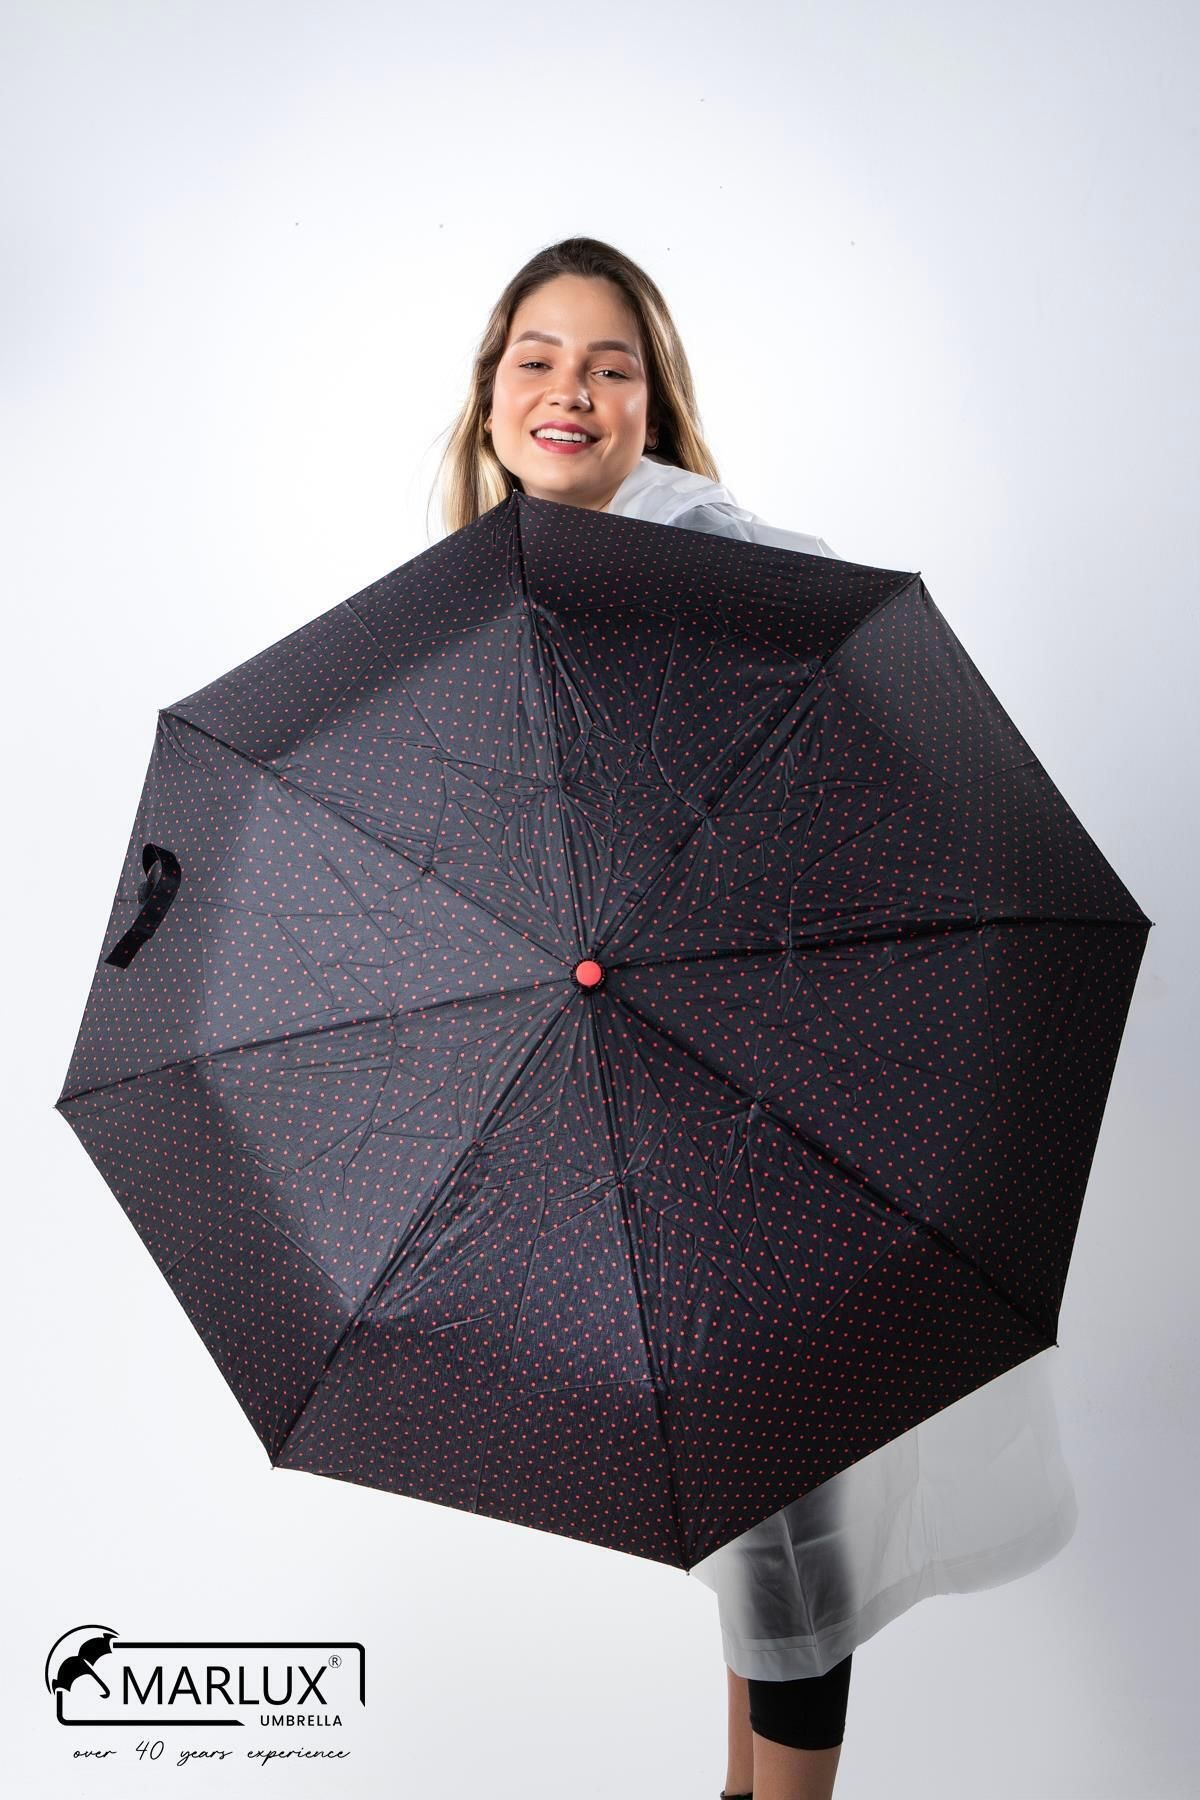 Marlux Siyah Kırmızı Mini Puantiyeli Tam Otomatik Kadın Şemsiye M21mar708r001